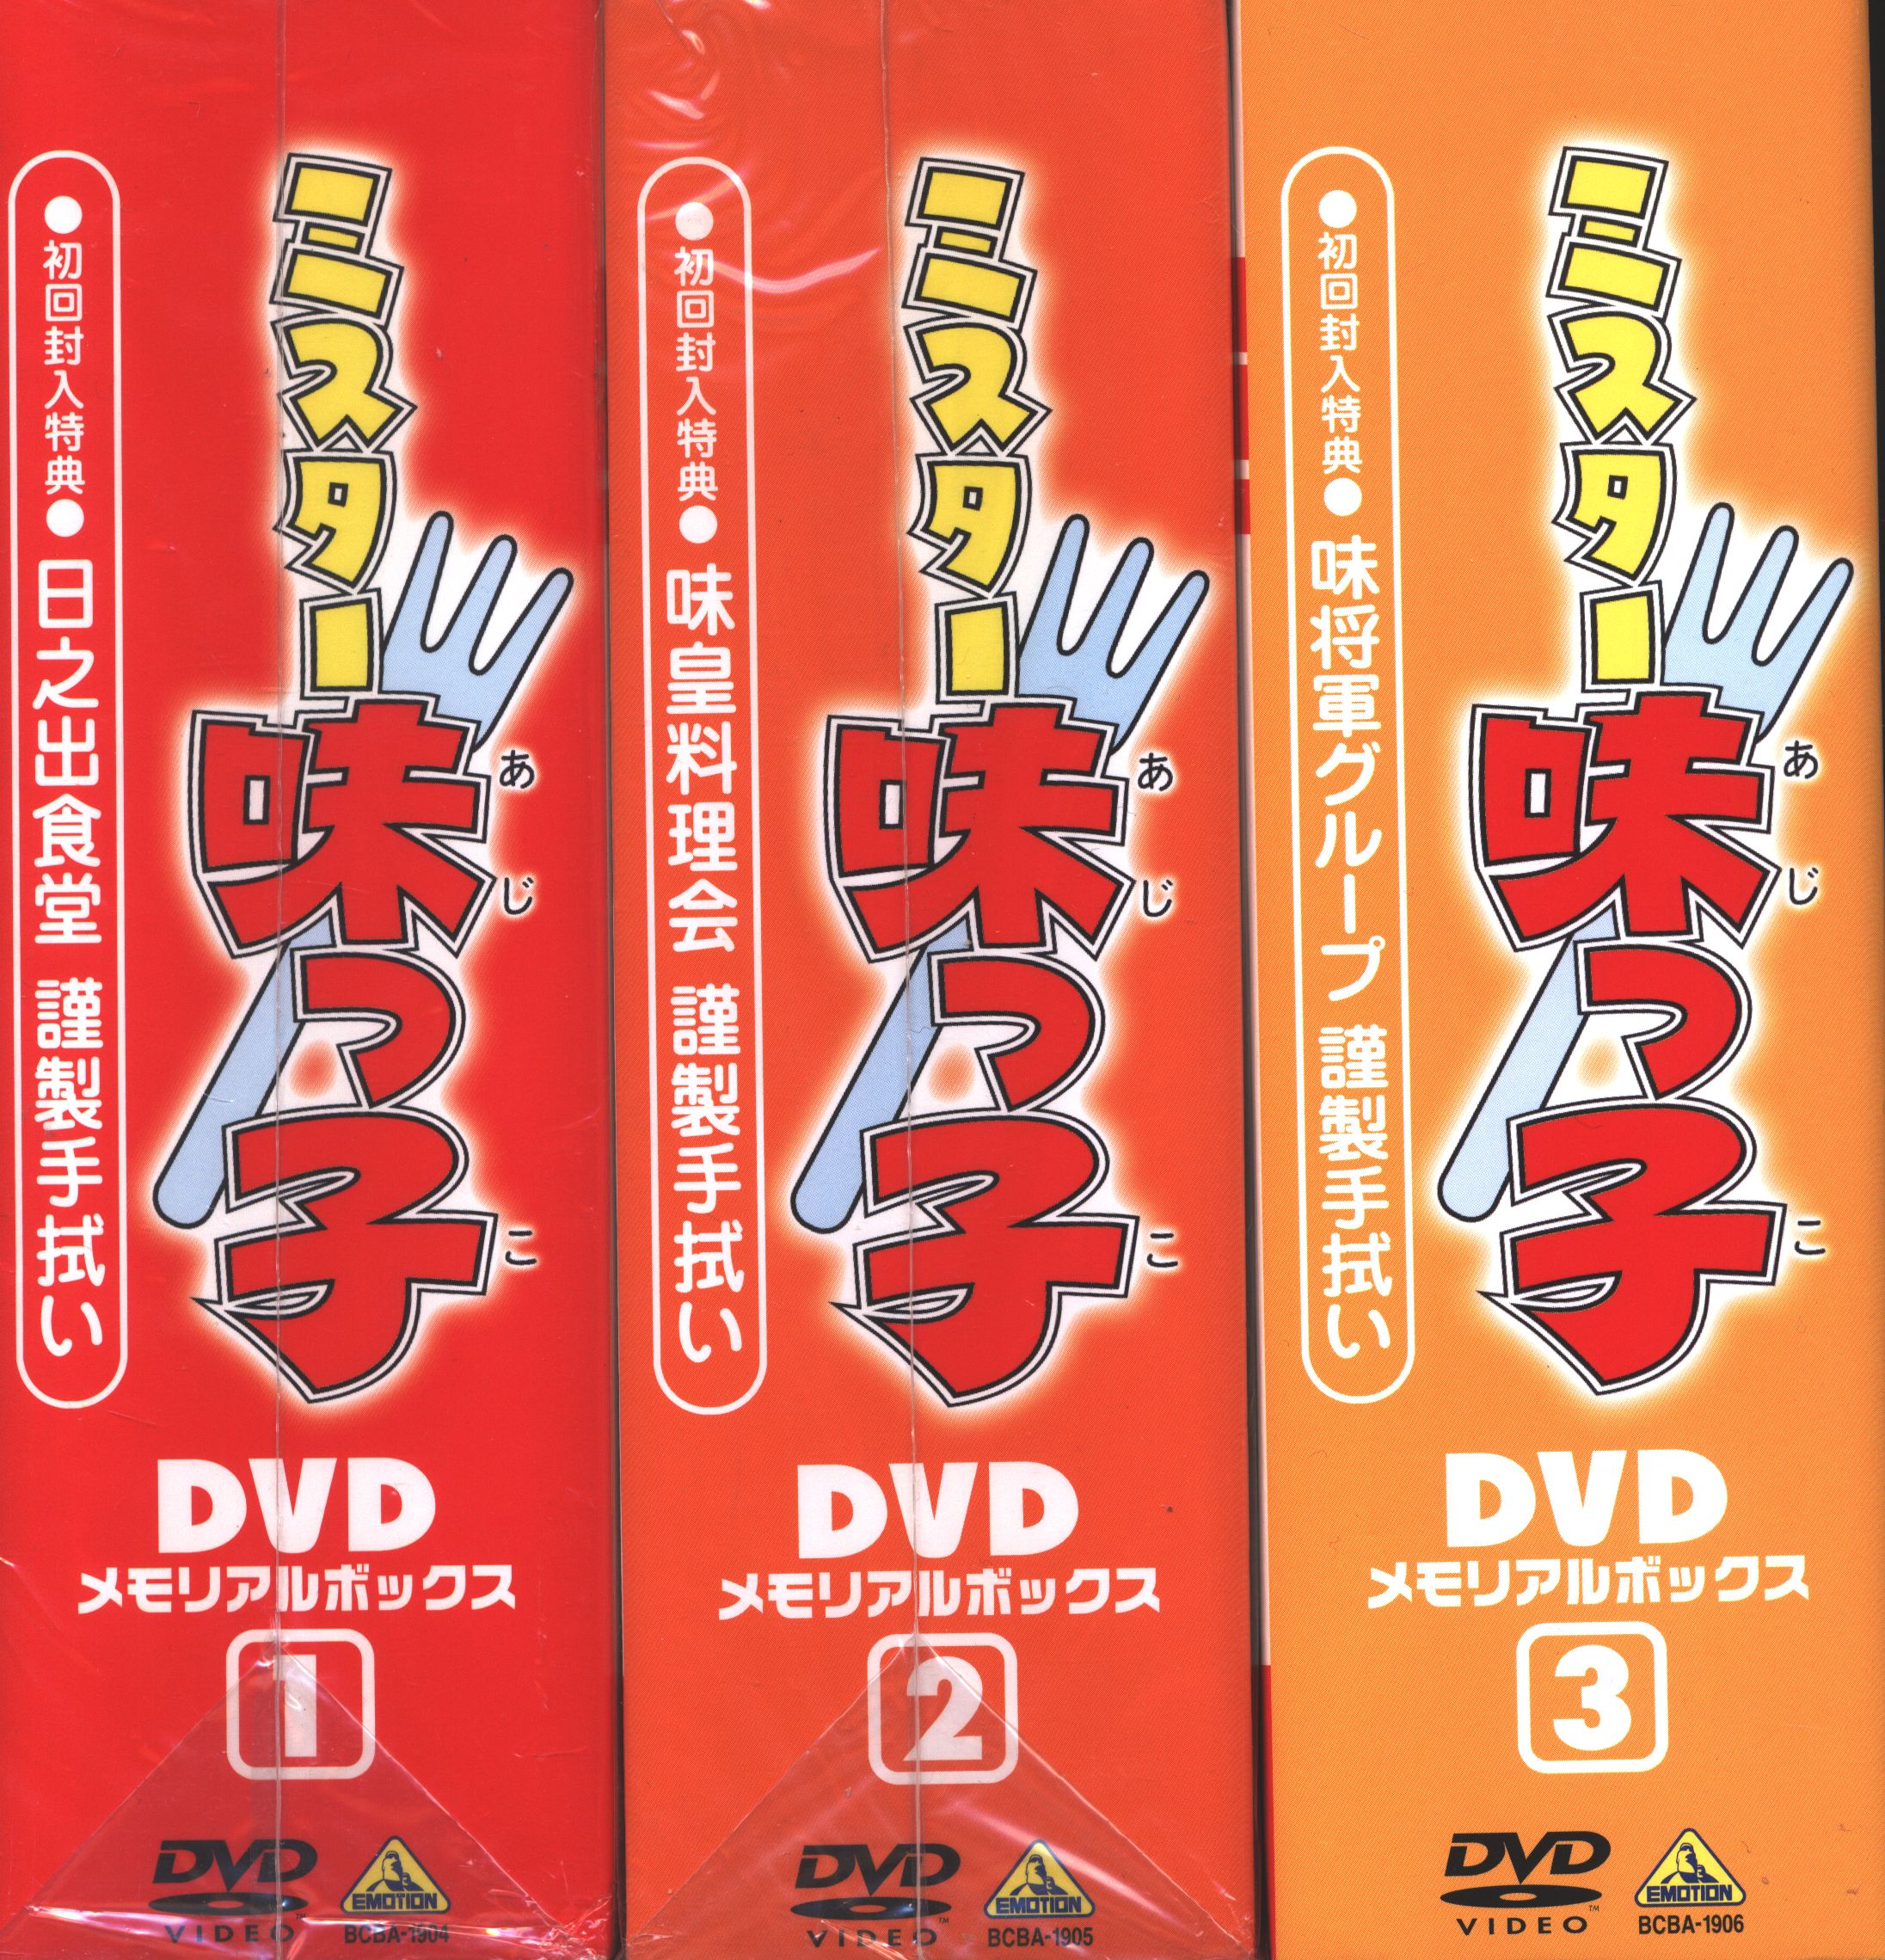 アニメDVD 初回版 ミスター味っ子 DVDメモリアルボックス 全3巻 セット